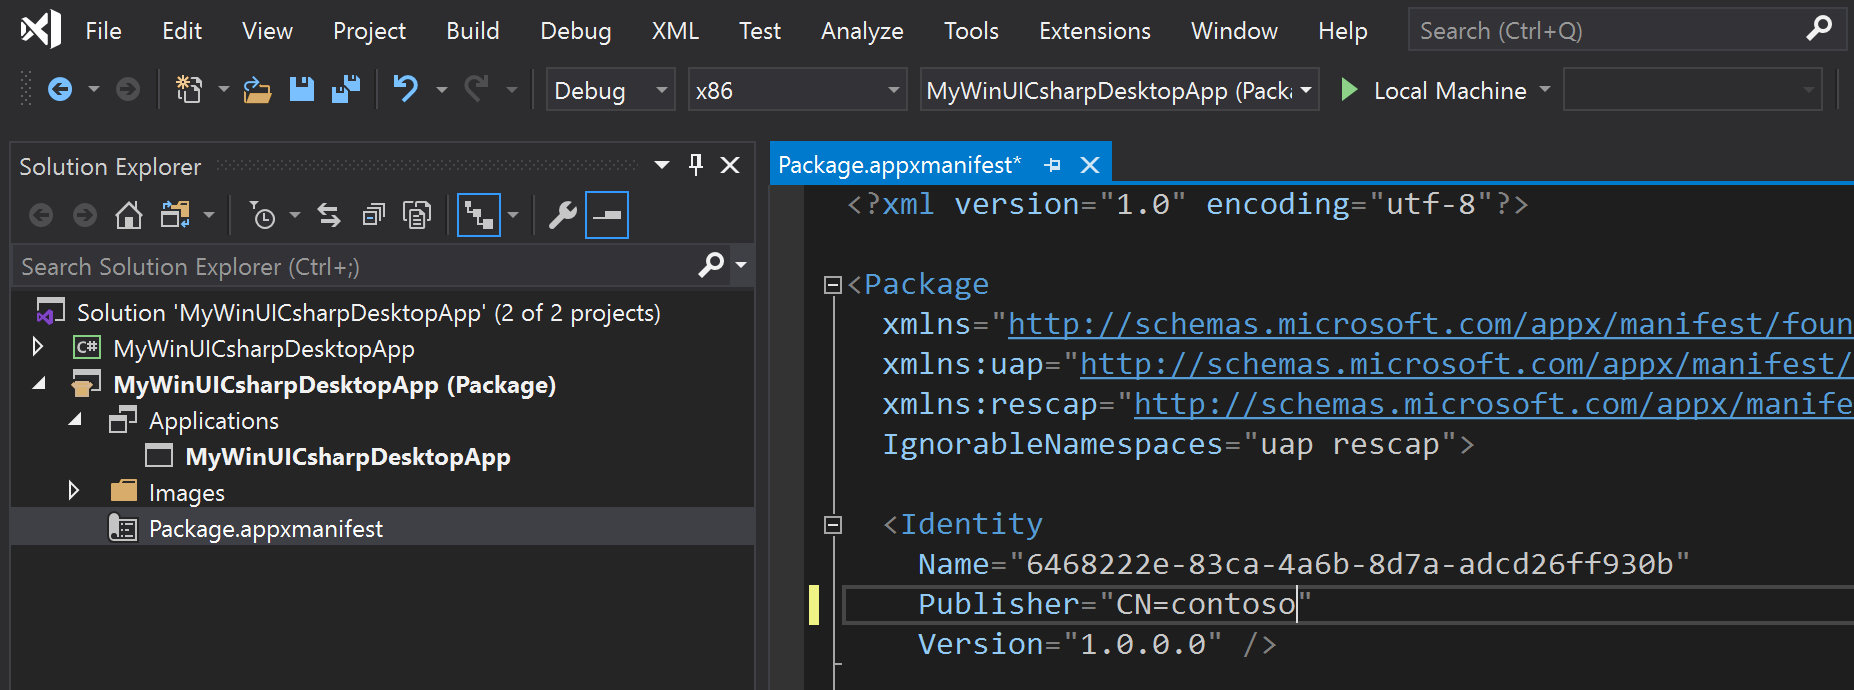 Visual Studio で、ソリューション エクスプローラー ペインと、パッケージ アプリ x マニフェスト ファイルの内容を表示しているスクリーンショット。